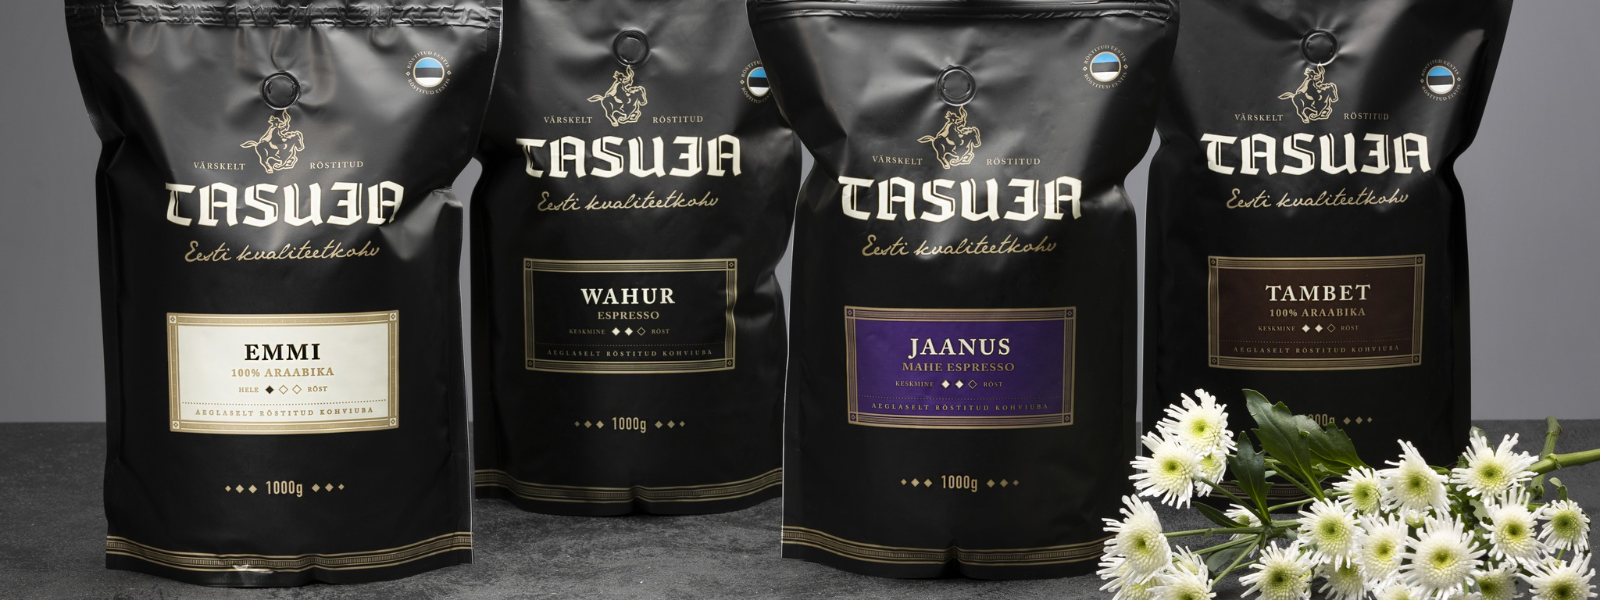 UBALA RÖSTIKODA OÜ - Oleme spetsialiseerunud kvaliteetsete värskelt röstitud kohviubade importimisele üle maailma nin...